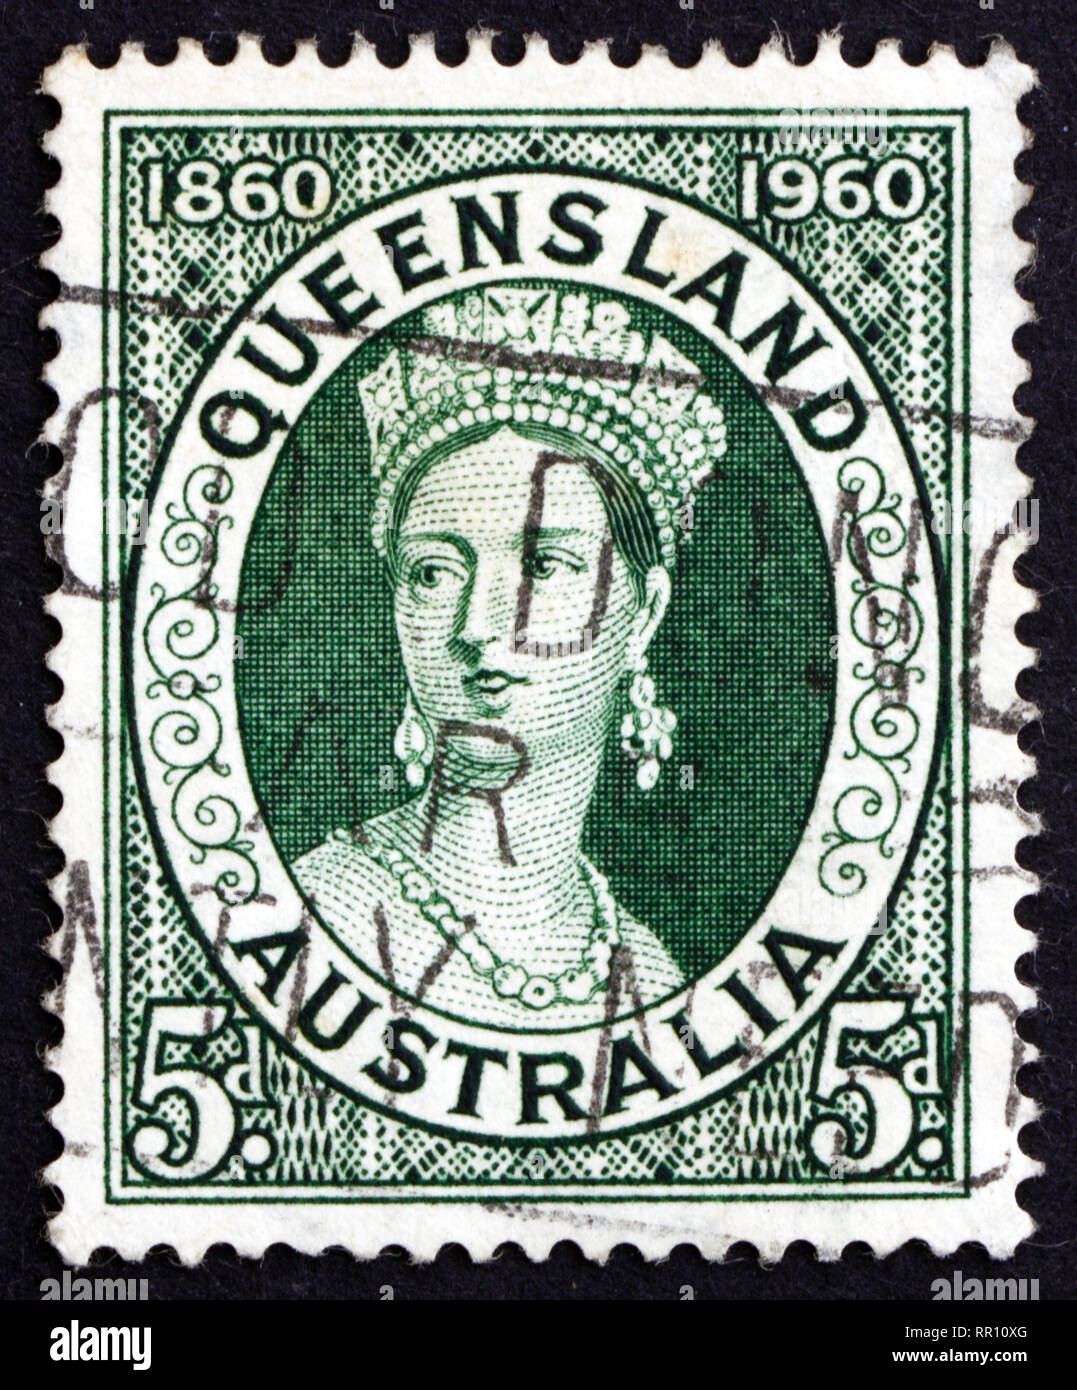 Australien - um 1960: ein Stempel im Australien gedruckten zeigt, Königin Victoria, 100. Jahrestag des ersten Queensland Briefmarken, um 1960 Stockfoto